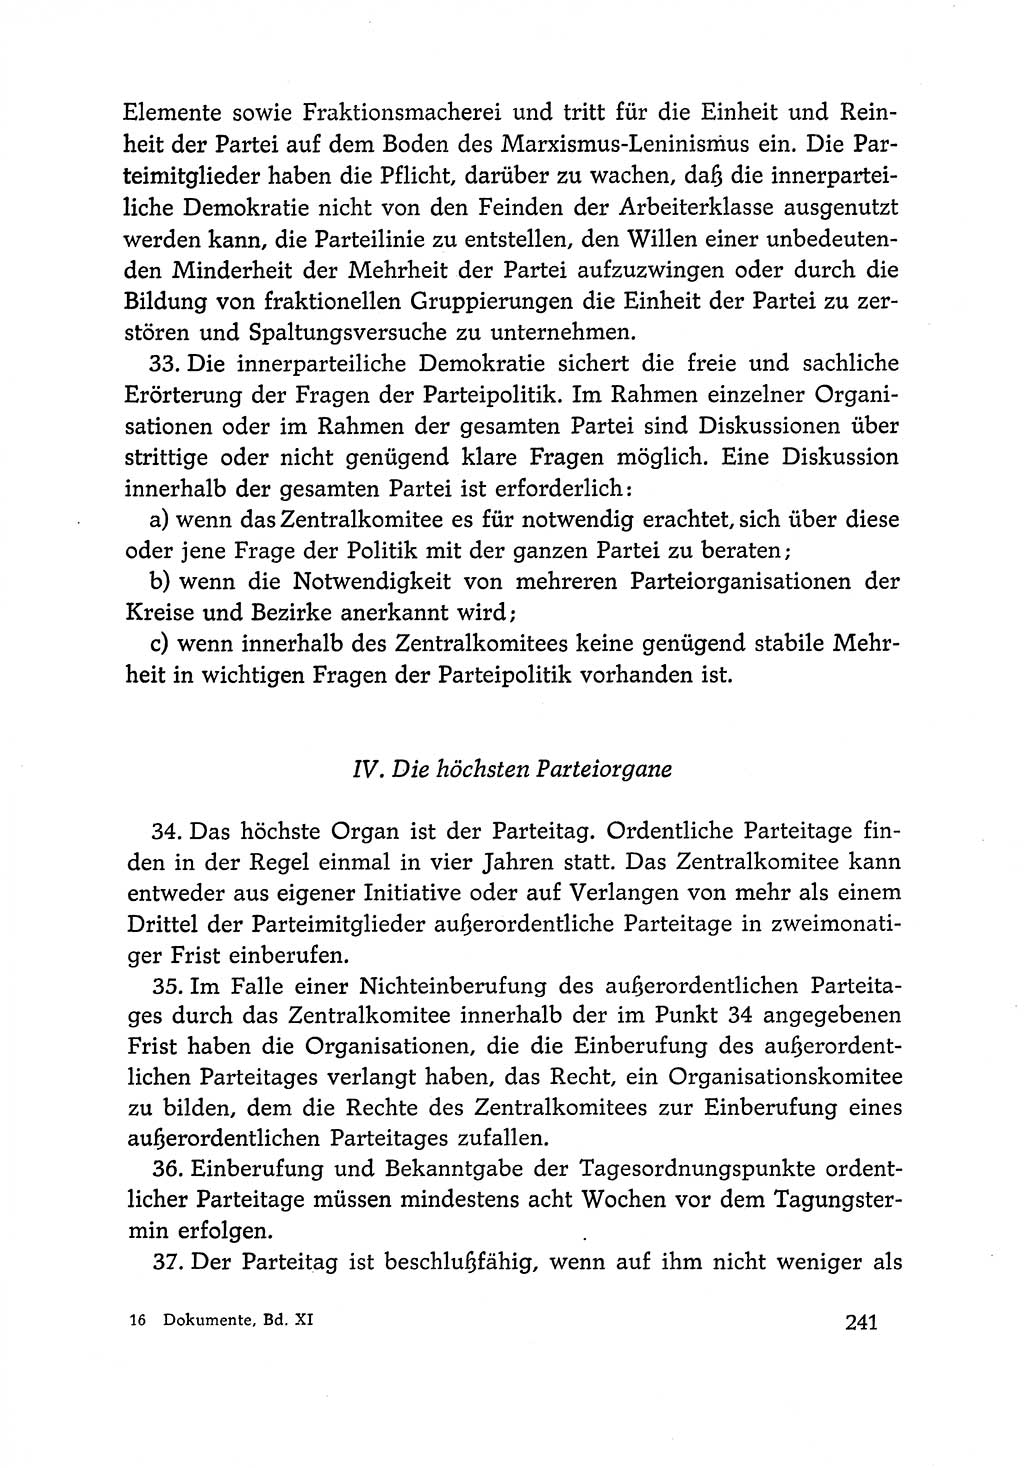 Dokumente der Sozialistischen Einheitspartei Deutschlands (SED) [Deutsche Demokratische Republik (DDR)] 1966-1967, Seite 241 (Dok. SED DDR 1966-1967, S. 241)